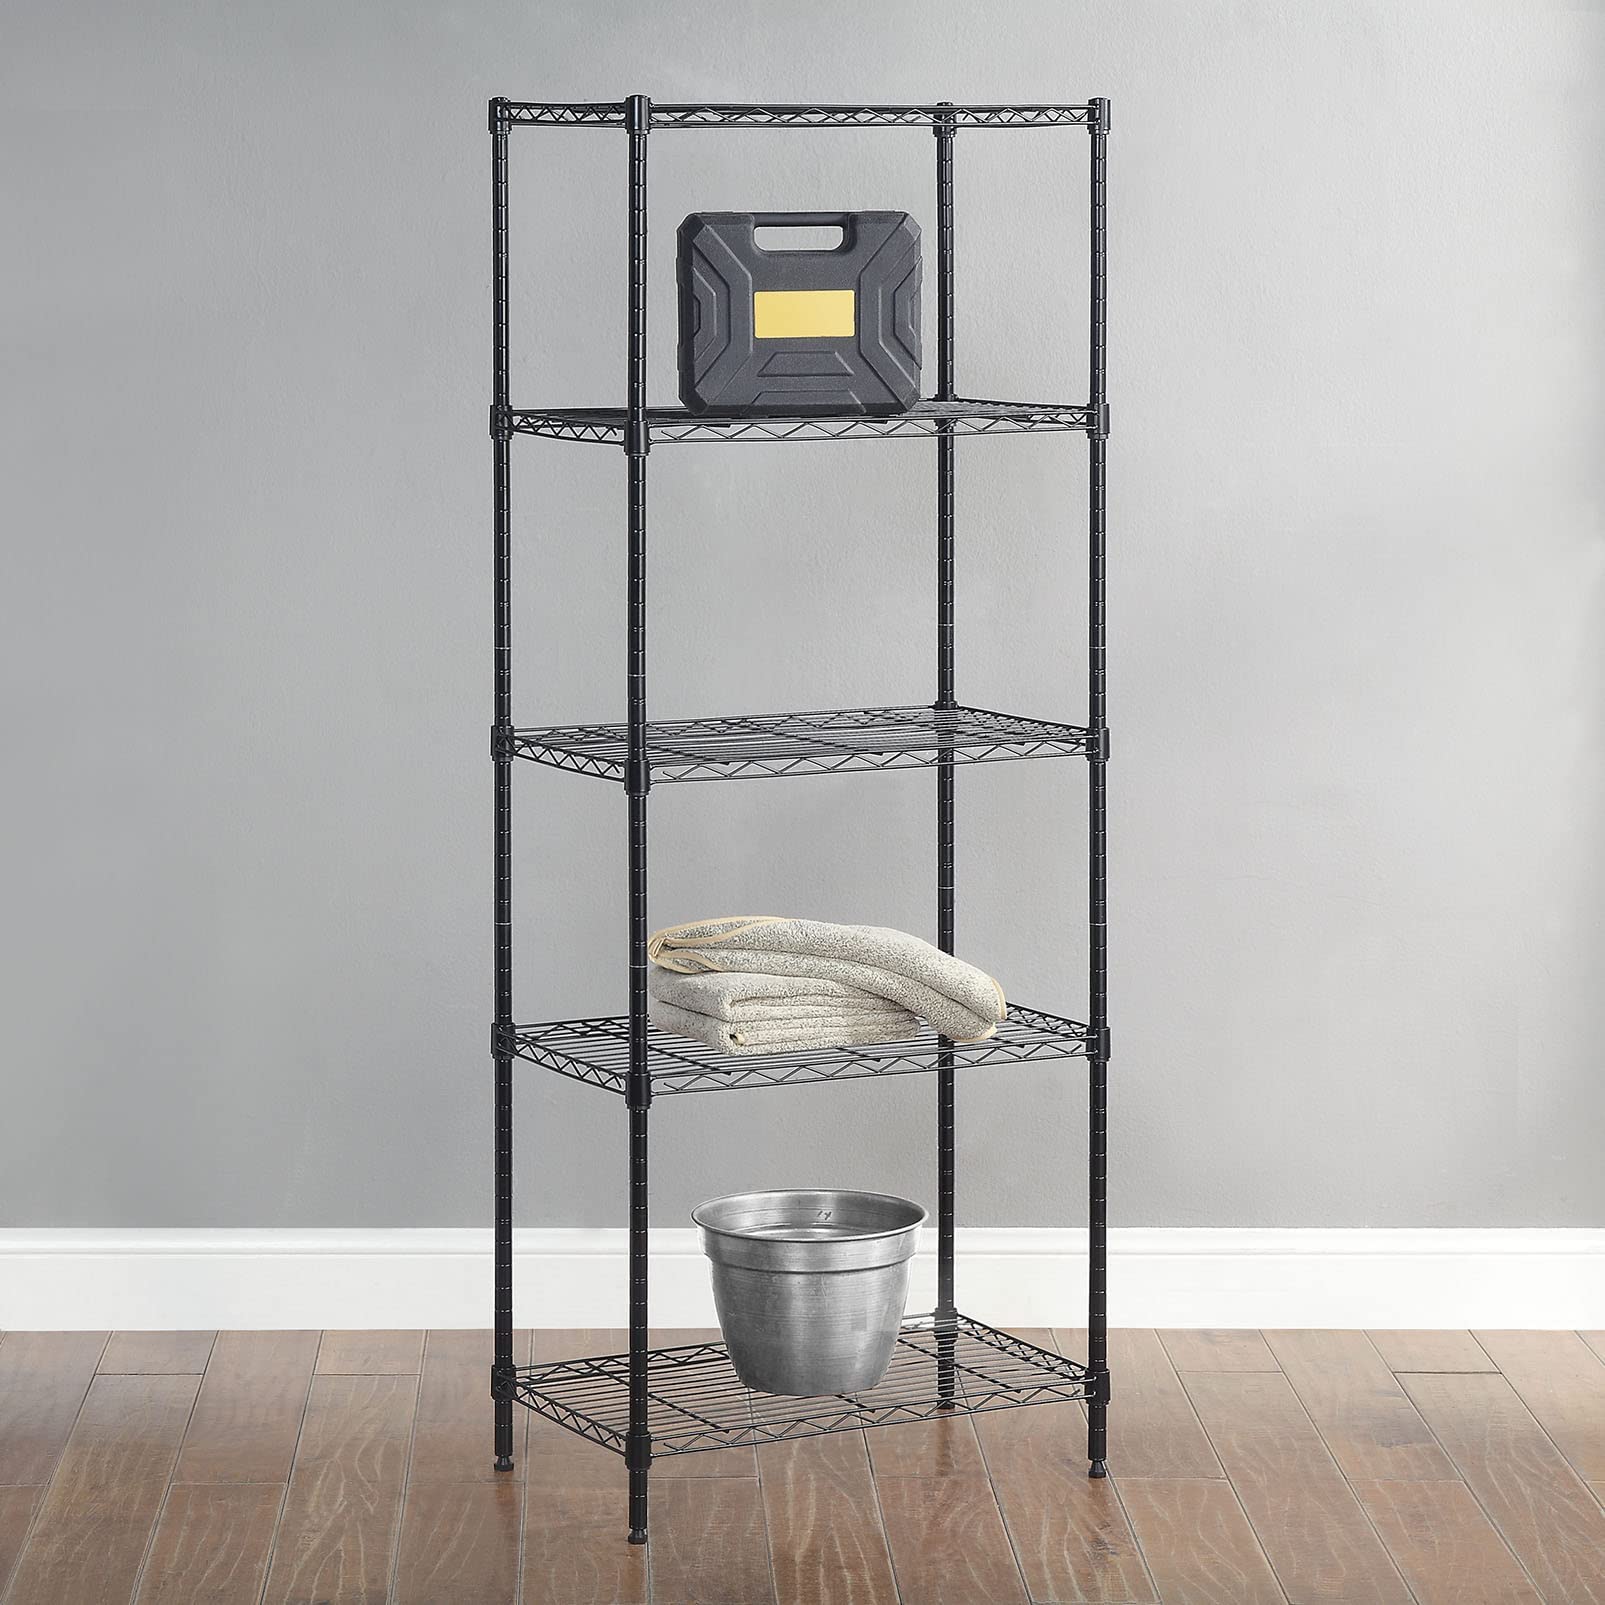 Amazon Basics 5-Shelf Adjustable Storage Shelving Unit, 200 Pound Loading Capacity per Shelf, Steel Organizer Wire Rack, 24 x 14 x 60 Inches (LxWxH), Black